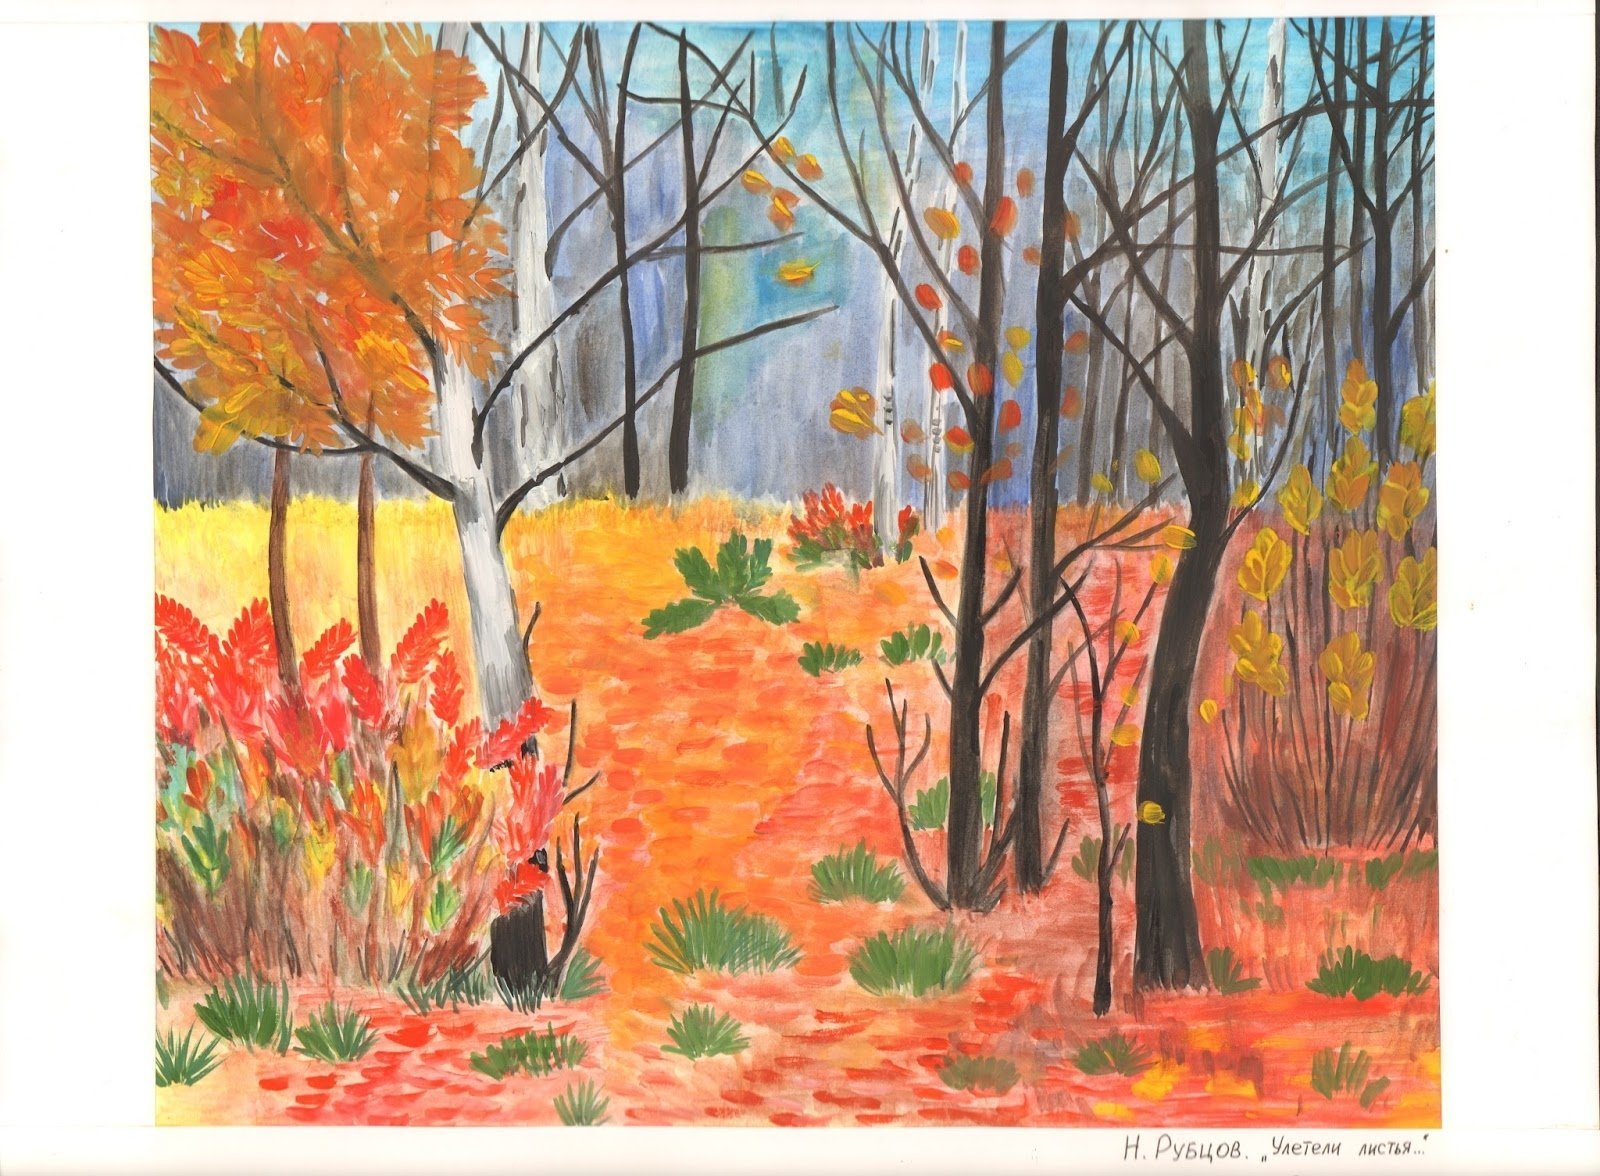 Стихотворение н рубцова сентябрь. Иллюстрация к стихотворению Рубцова в осеннем лесу.